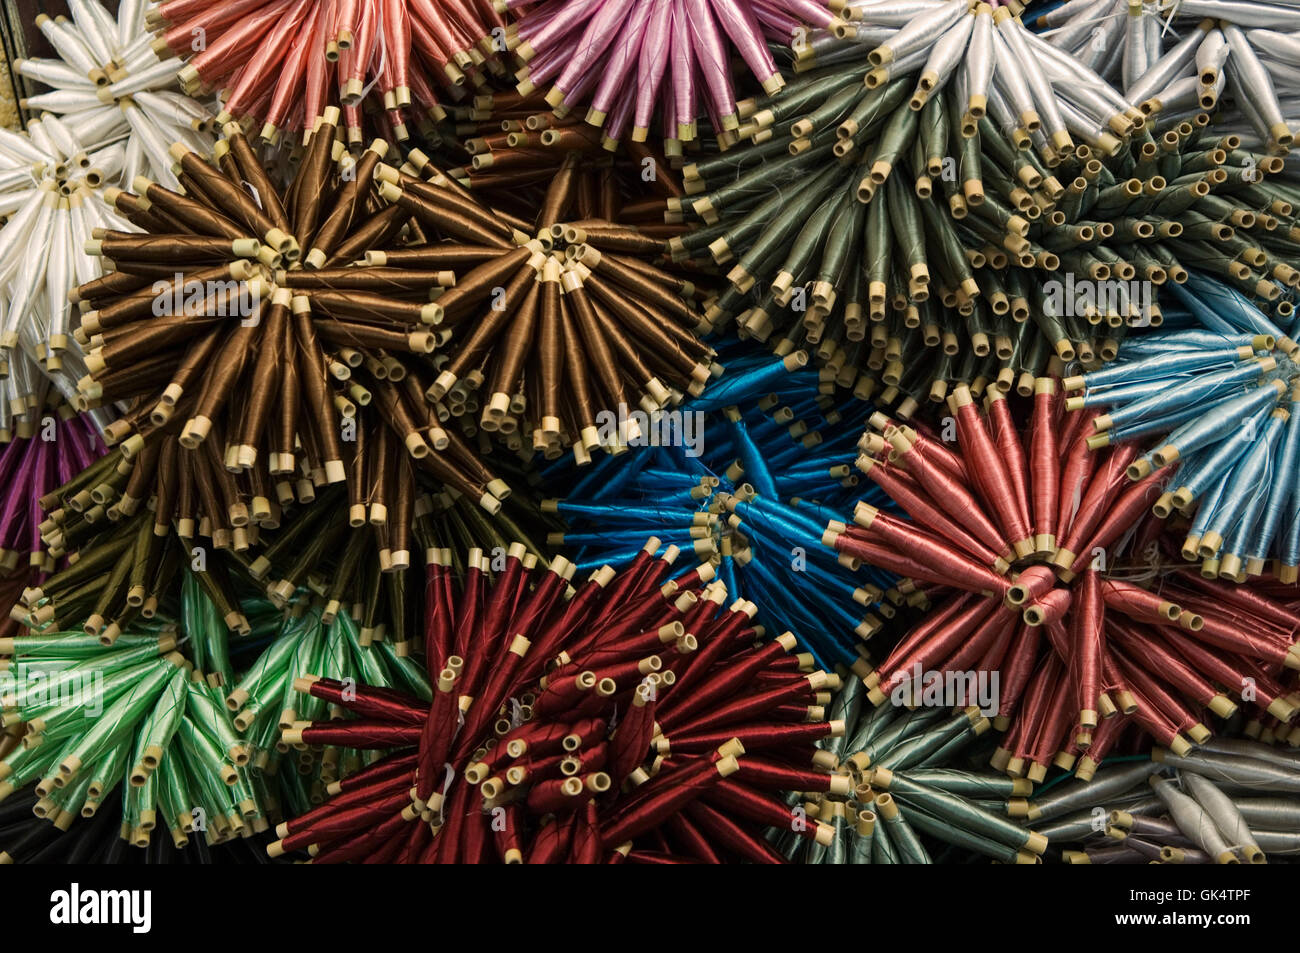 2006, Thread-FËs, Marokko---Spulen aus Seide in Basar---Bild von Jeremy Horner © Stockfoto